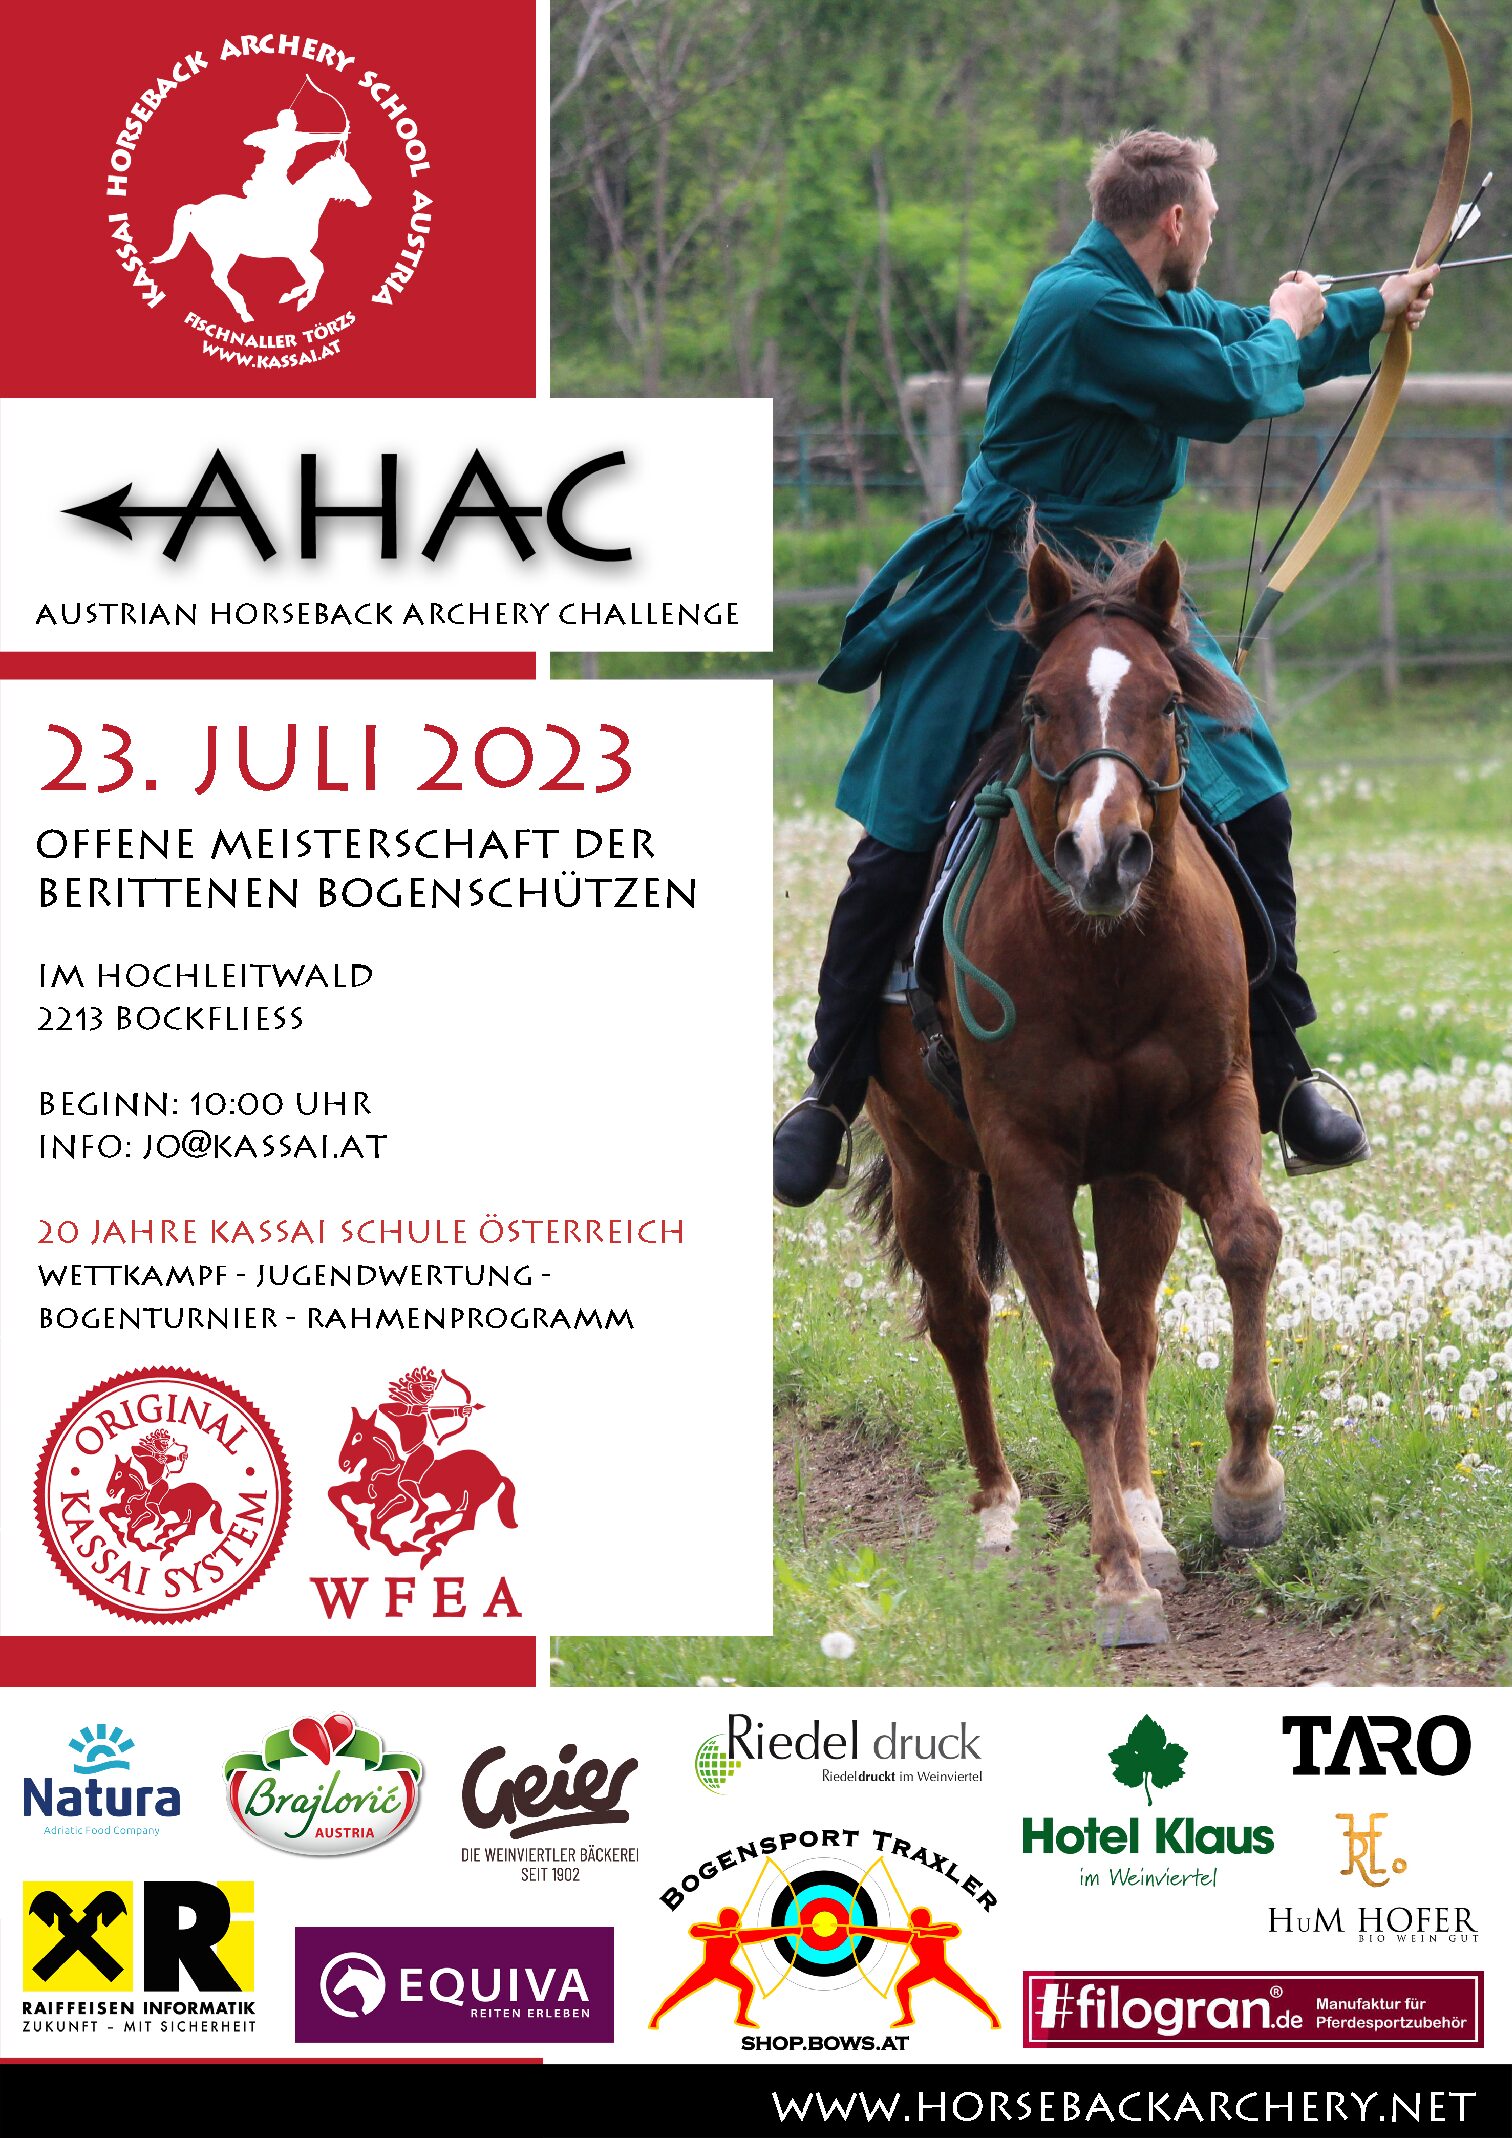 AHAC  - Austrian Horseback Archery Challenge - 20 Jahre Kassai Österreich